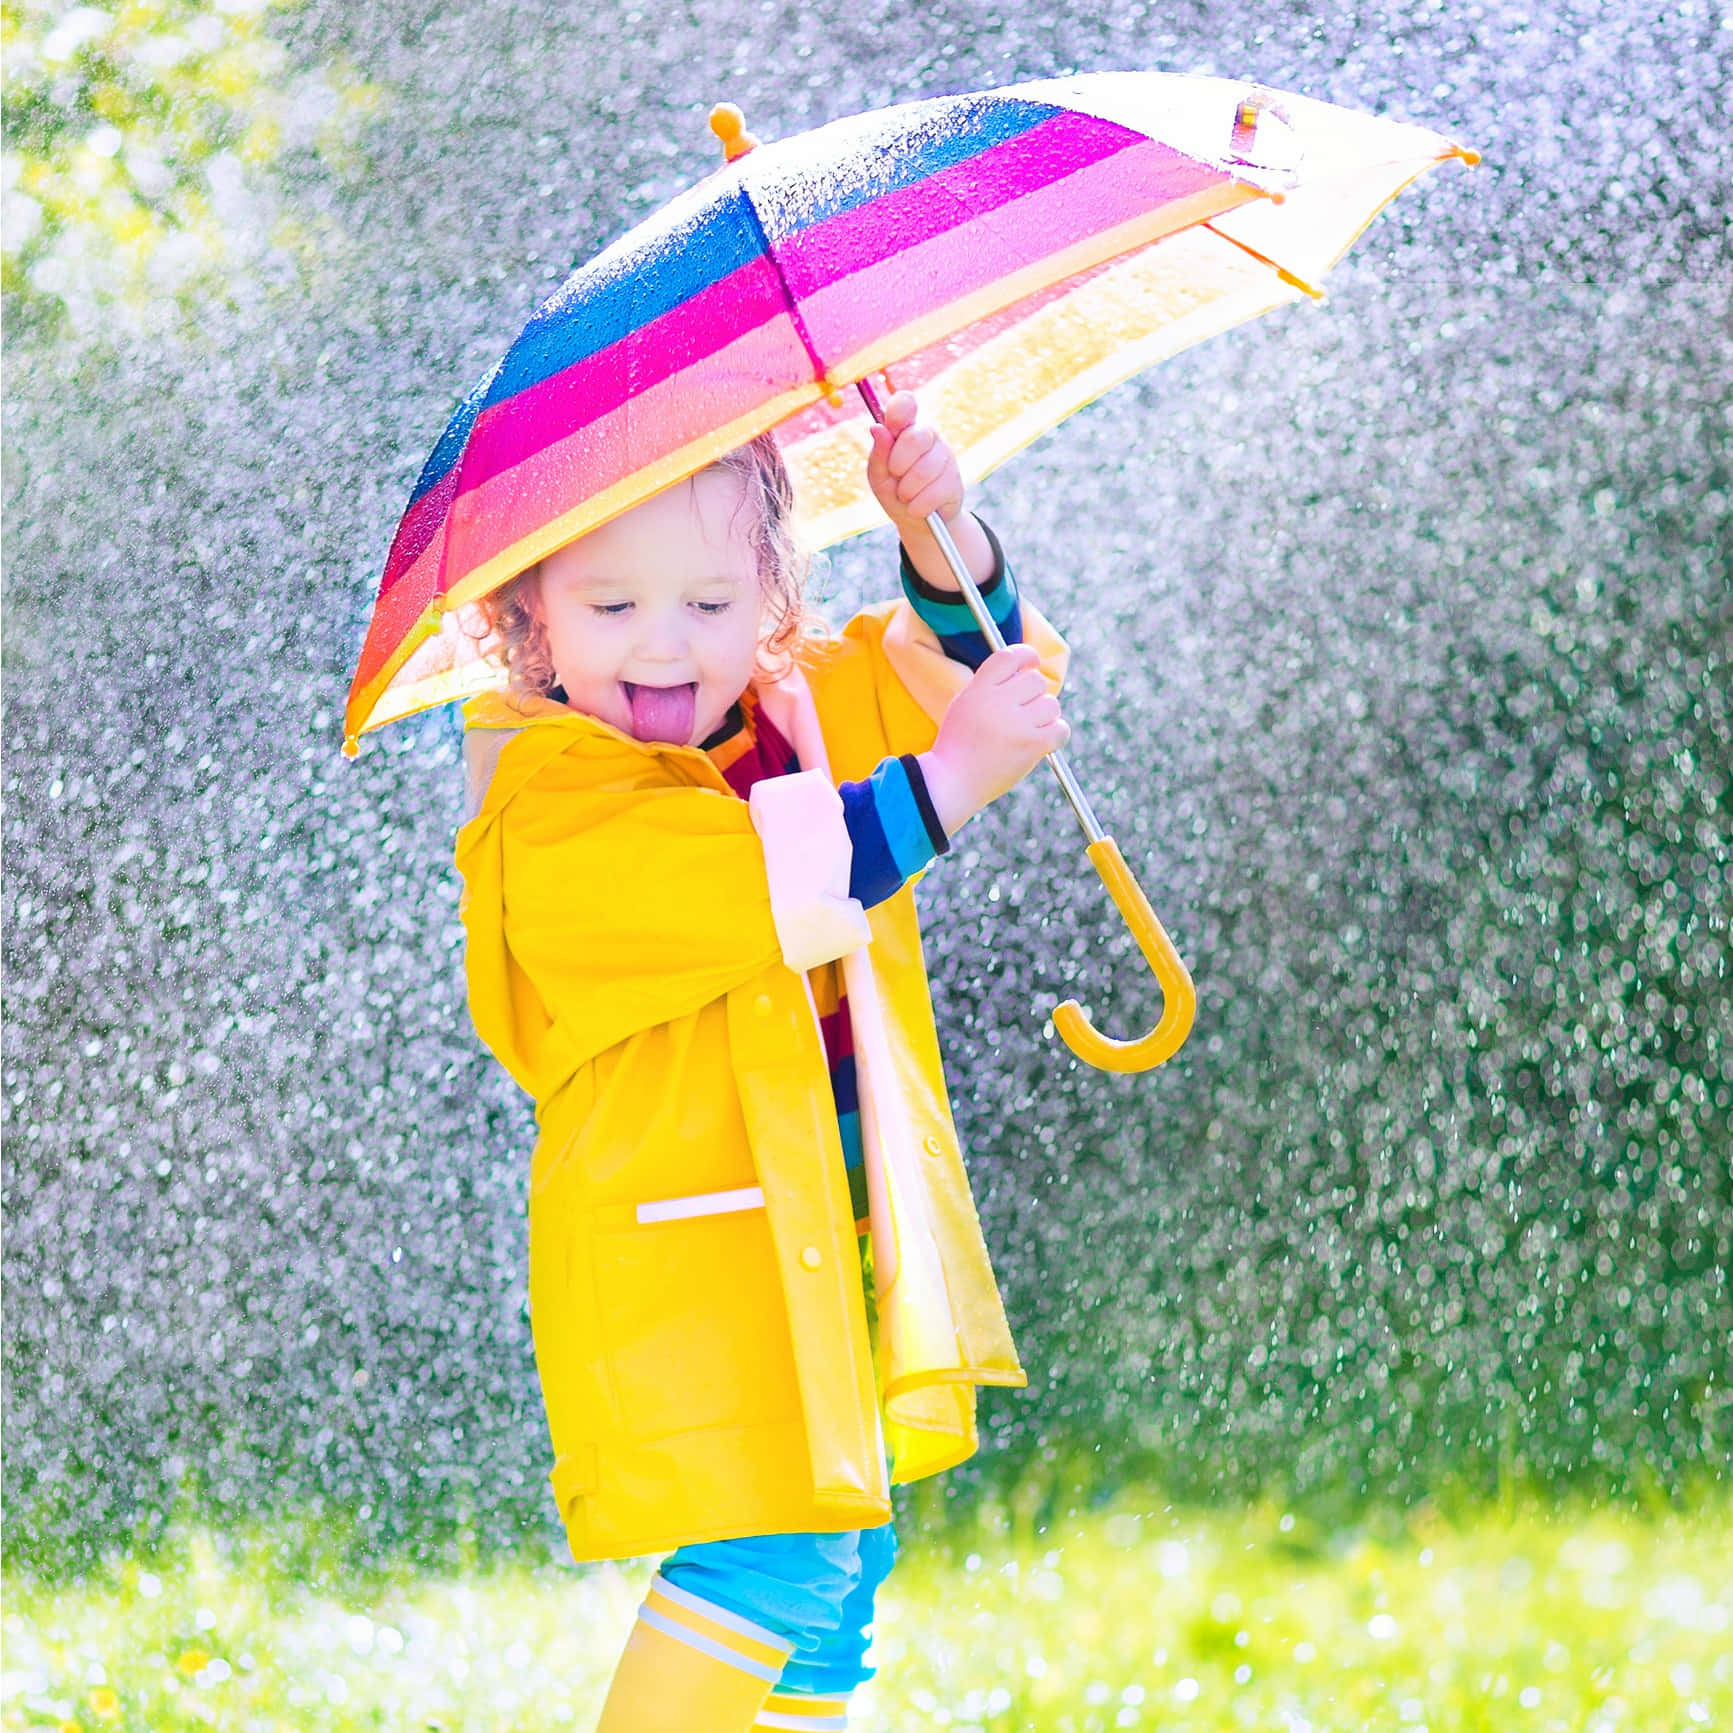 Imagende Una Niña Feliz Con Un Paraguas En Un Día Lluvioso